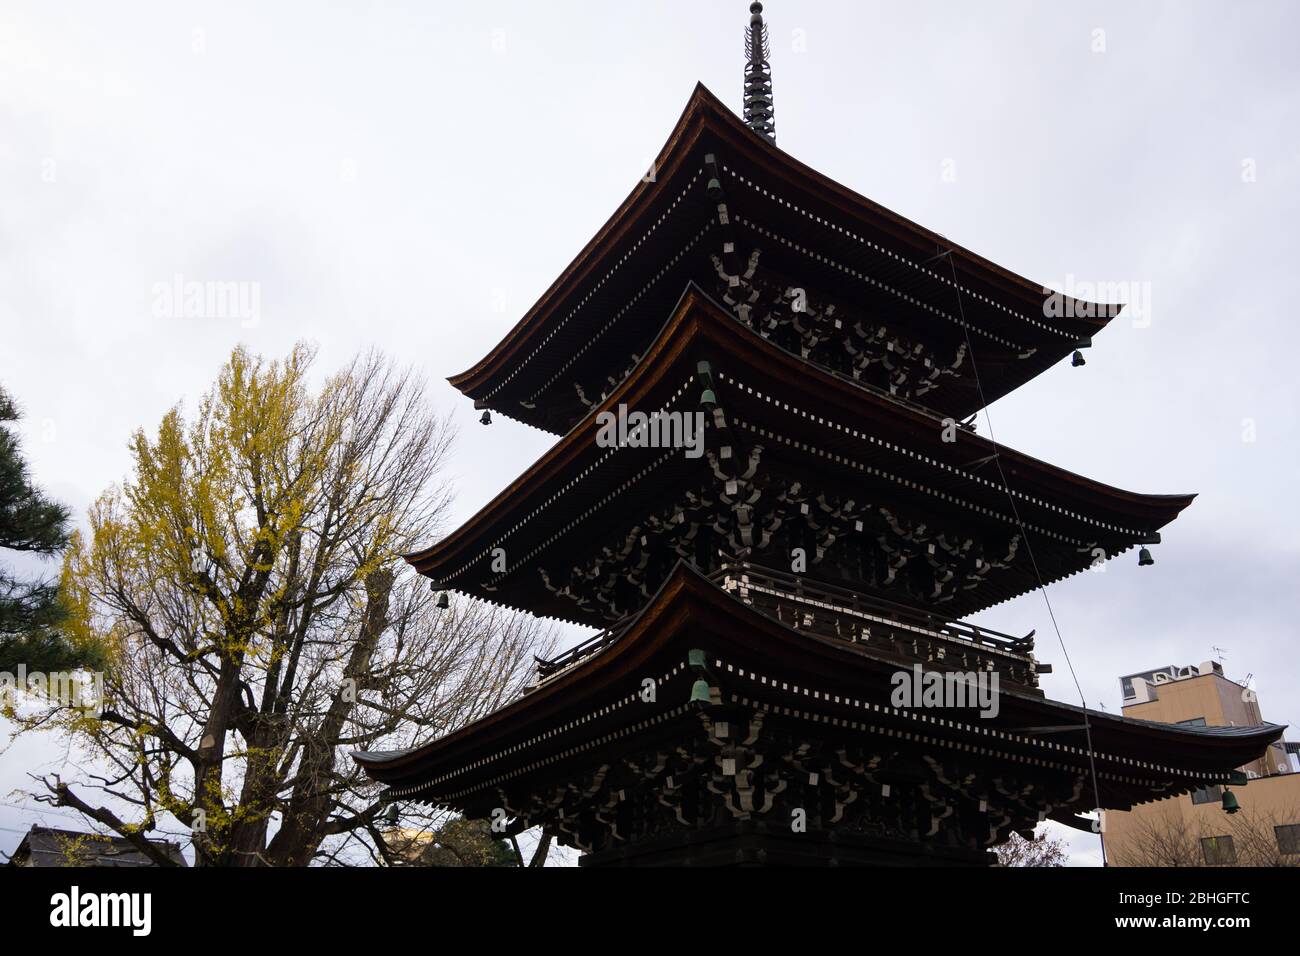 El templo Hida Kokubunji fue construido en 746, más de 1200 años, igual que el enorme árbol de ginko que hay detrás. El edificio es la estructura más antigua. Foto de stock